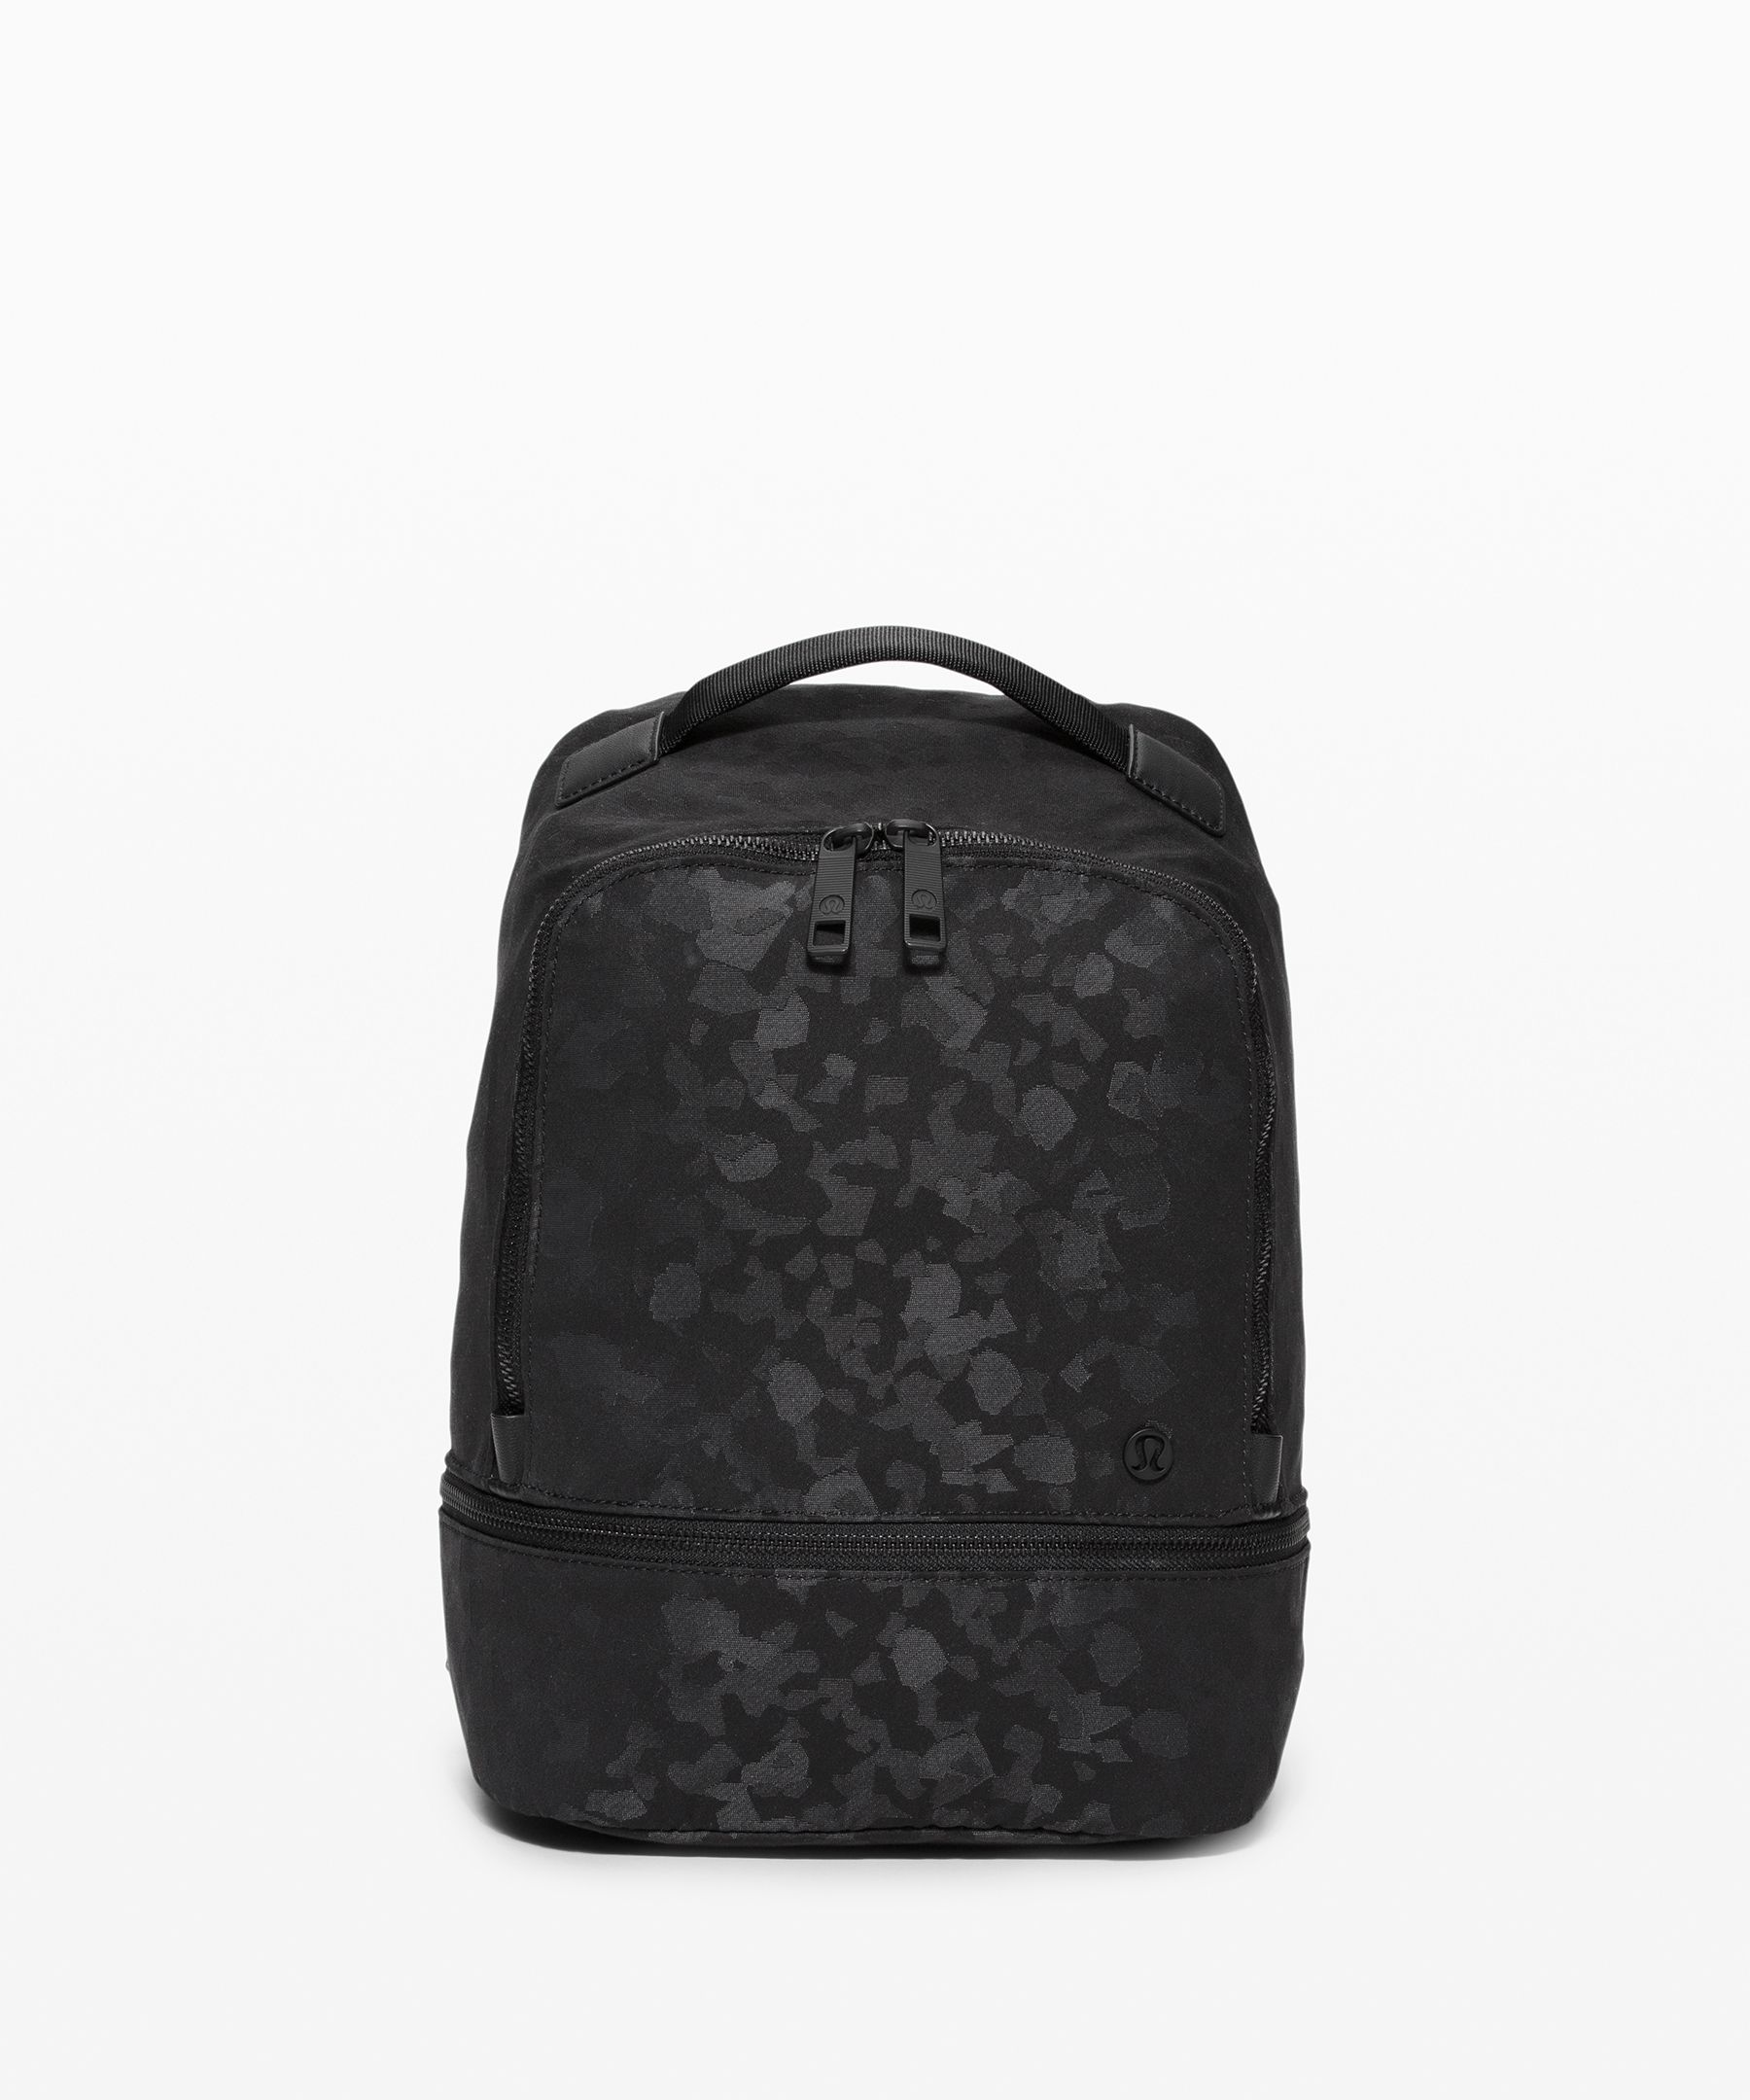 lululemon mini backpack